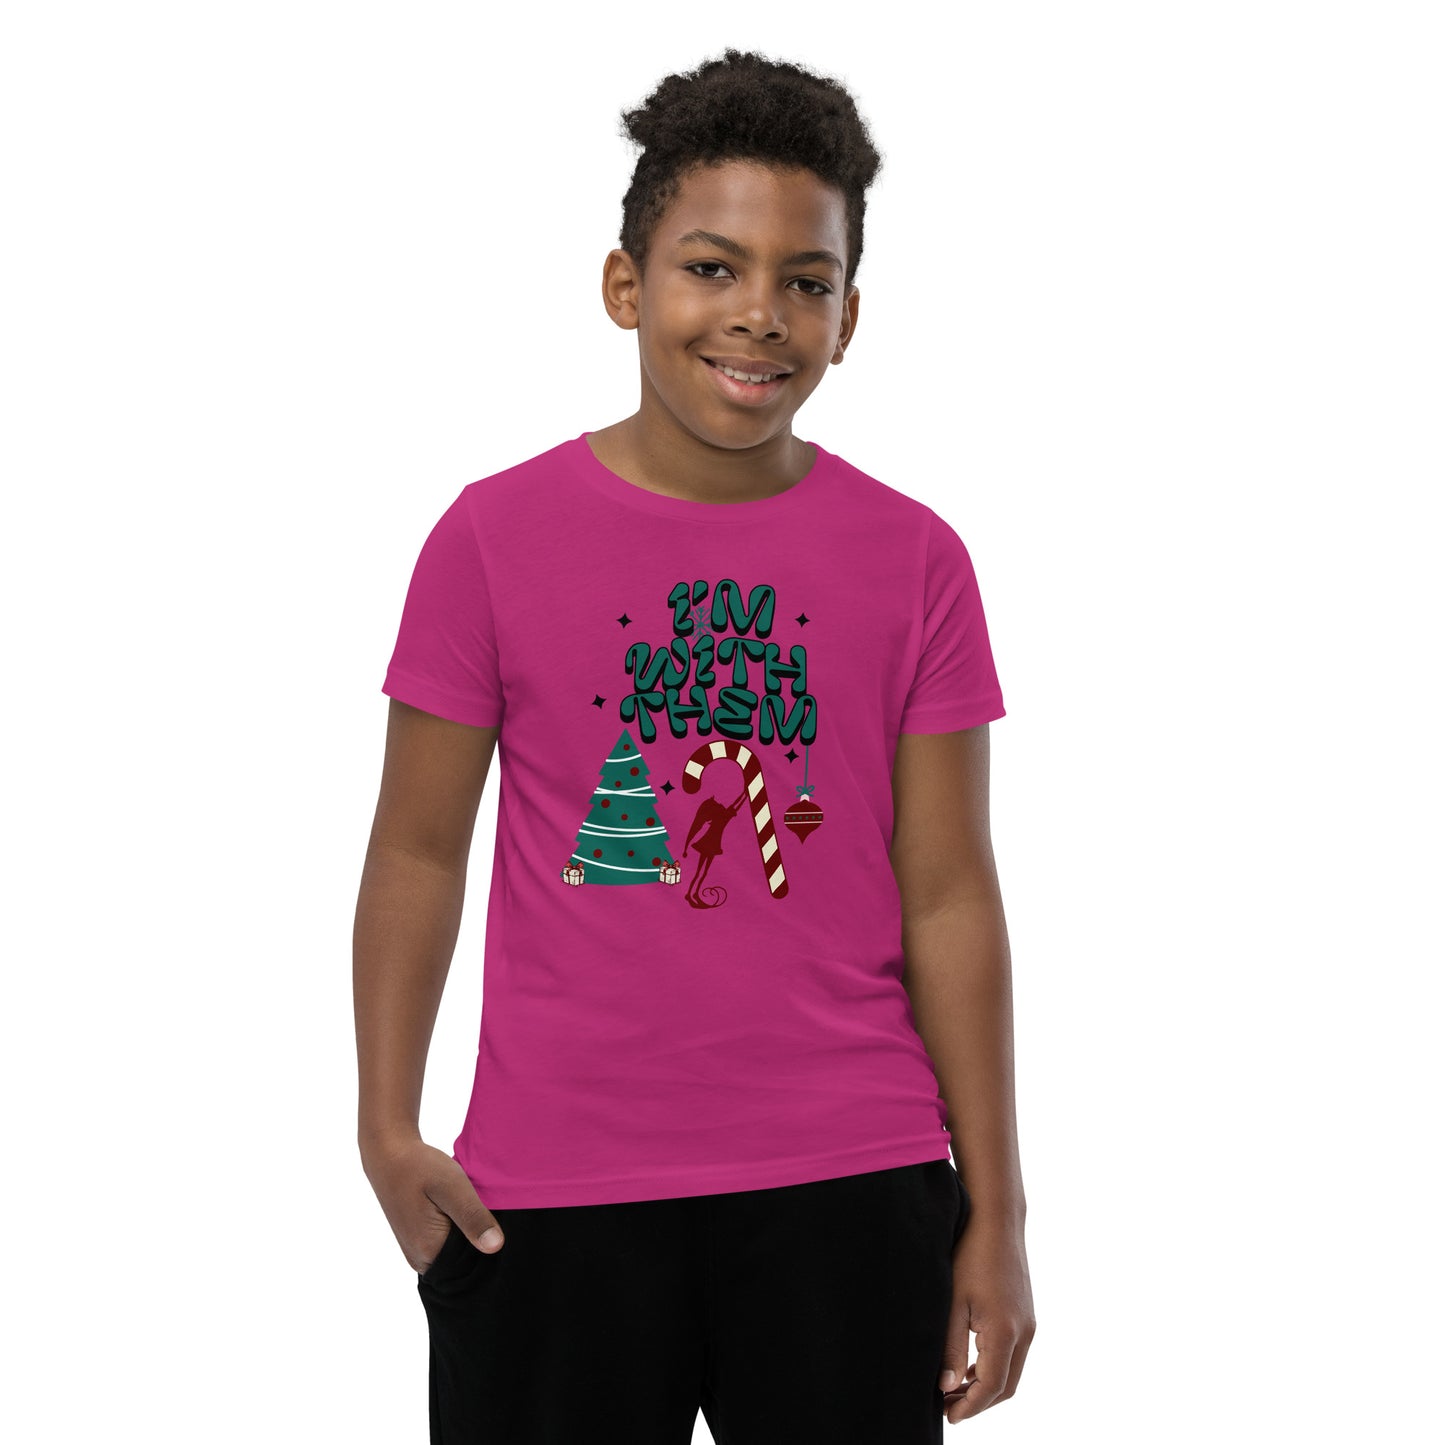 Camiseta juvenil de Navidad: ¡ESTOY CON ELLOS!